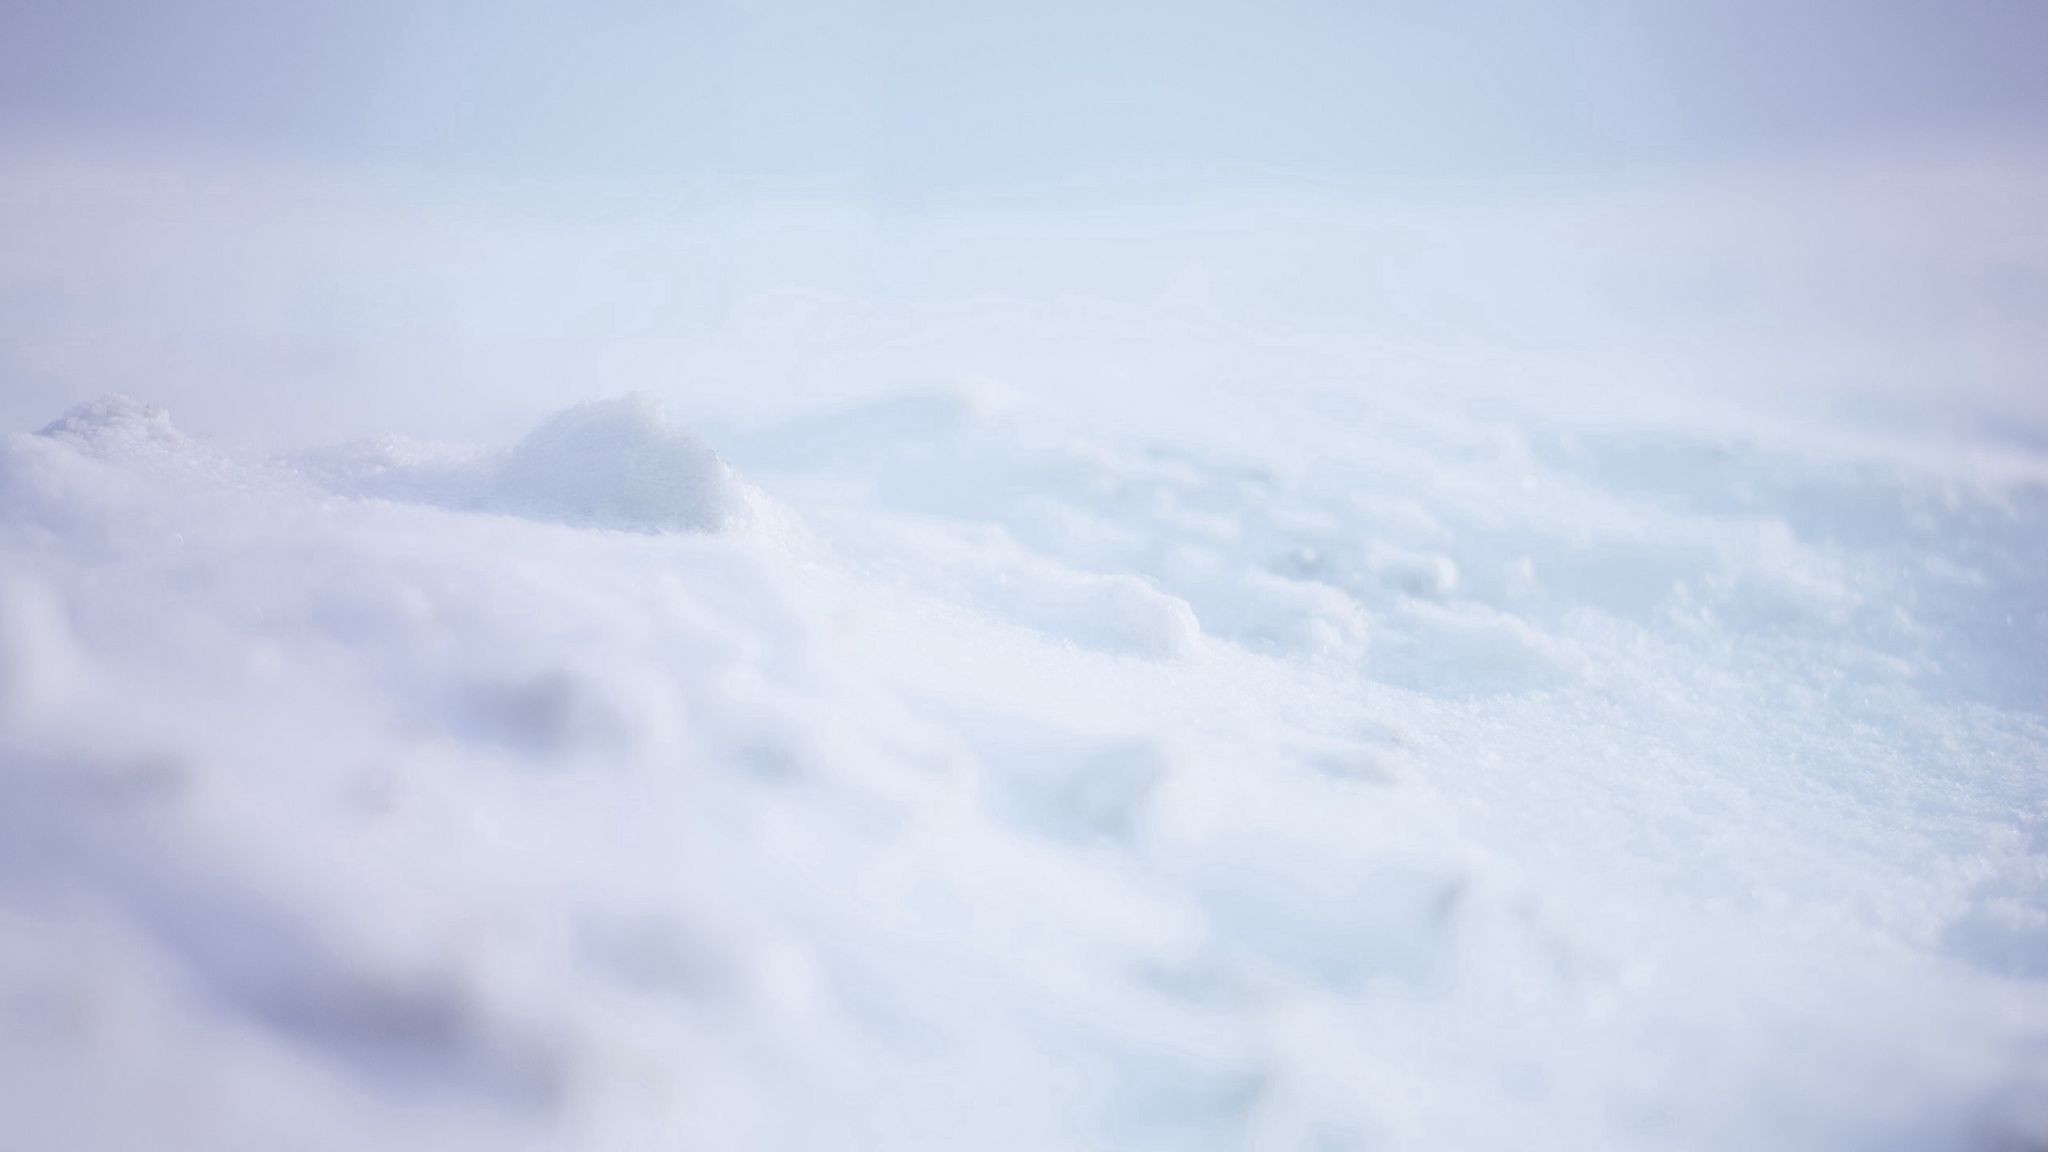 Khám phá hình nền snow wallpaper 2048x1152 với màu trắng tuyết trắng xóa cùng công nghệ hiện đại sắc nét. Hình nền với đầy đủ màu sắc của tuyết và bề mặt trắng như pha lê sẽ khiến bạn cảm thấy như đang đi dạo giữa đỉnh núi tuyết trắng. Bức ảnh này sẽ mang lại cho bạn cảm giác dễ chịu và sảng khoái trong những ngày đông lạnh giá.